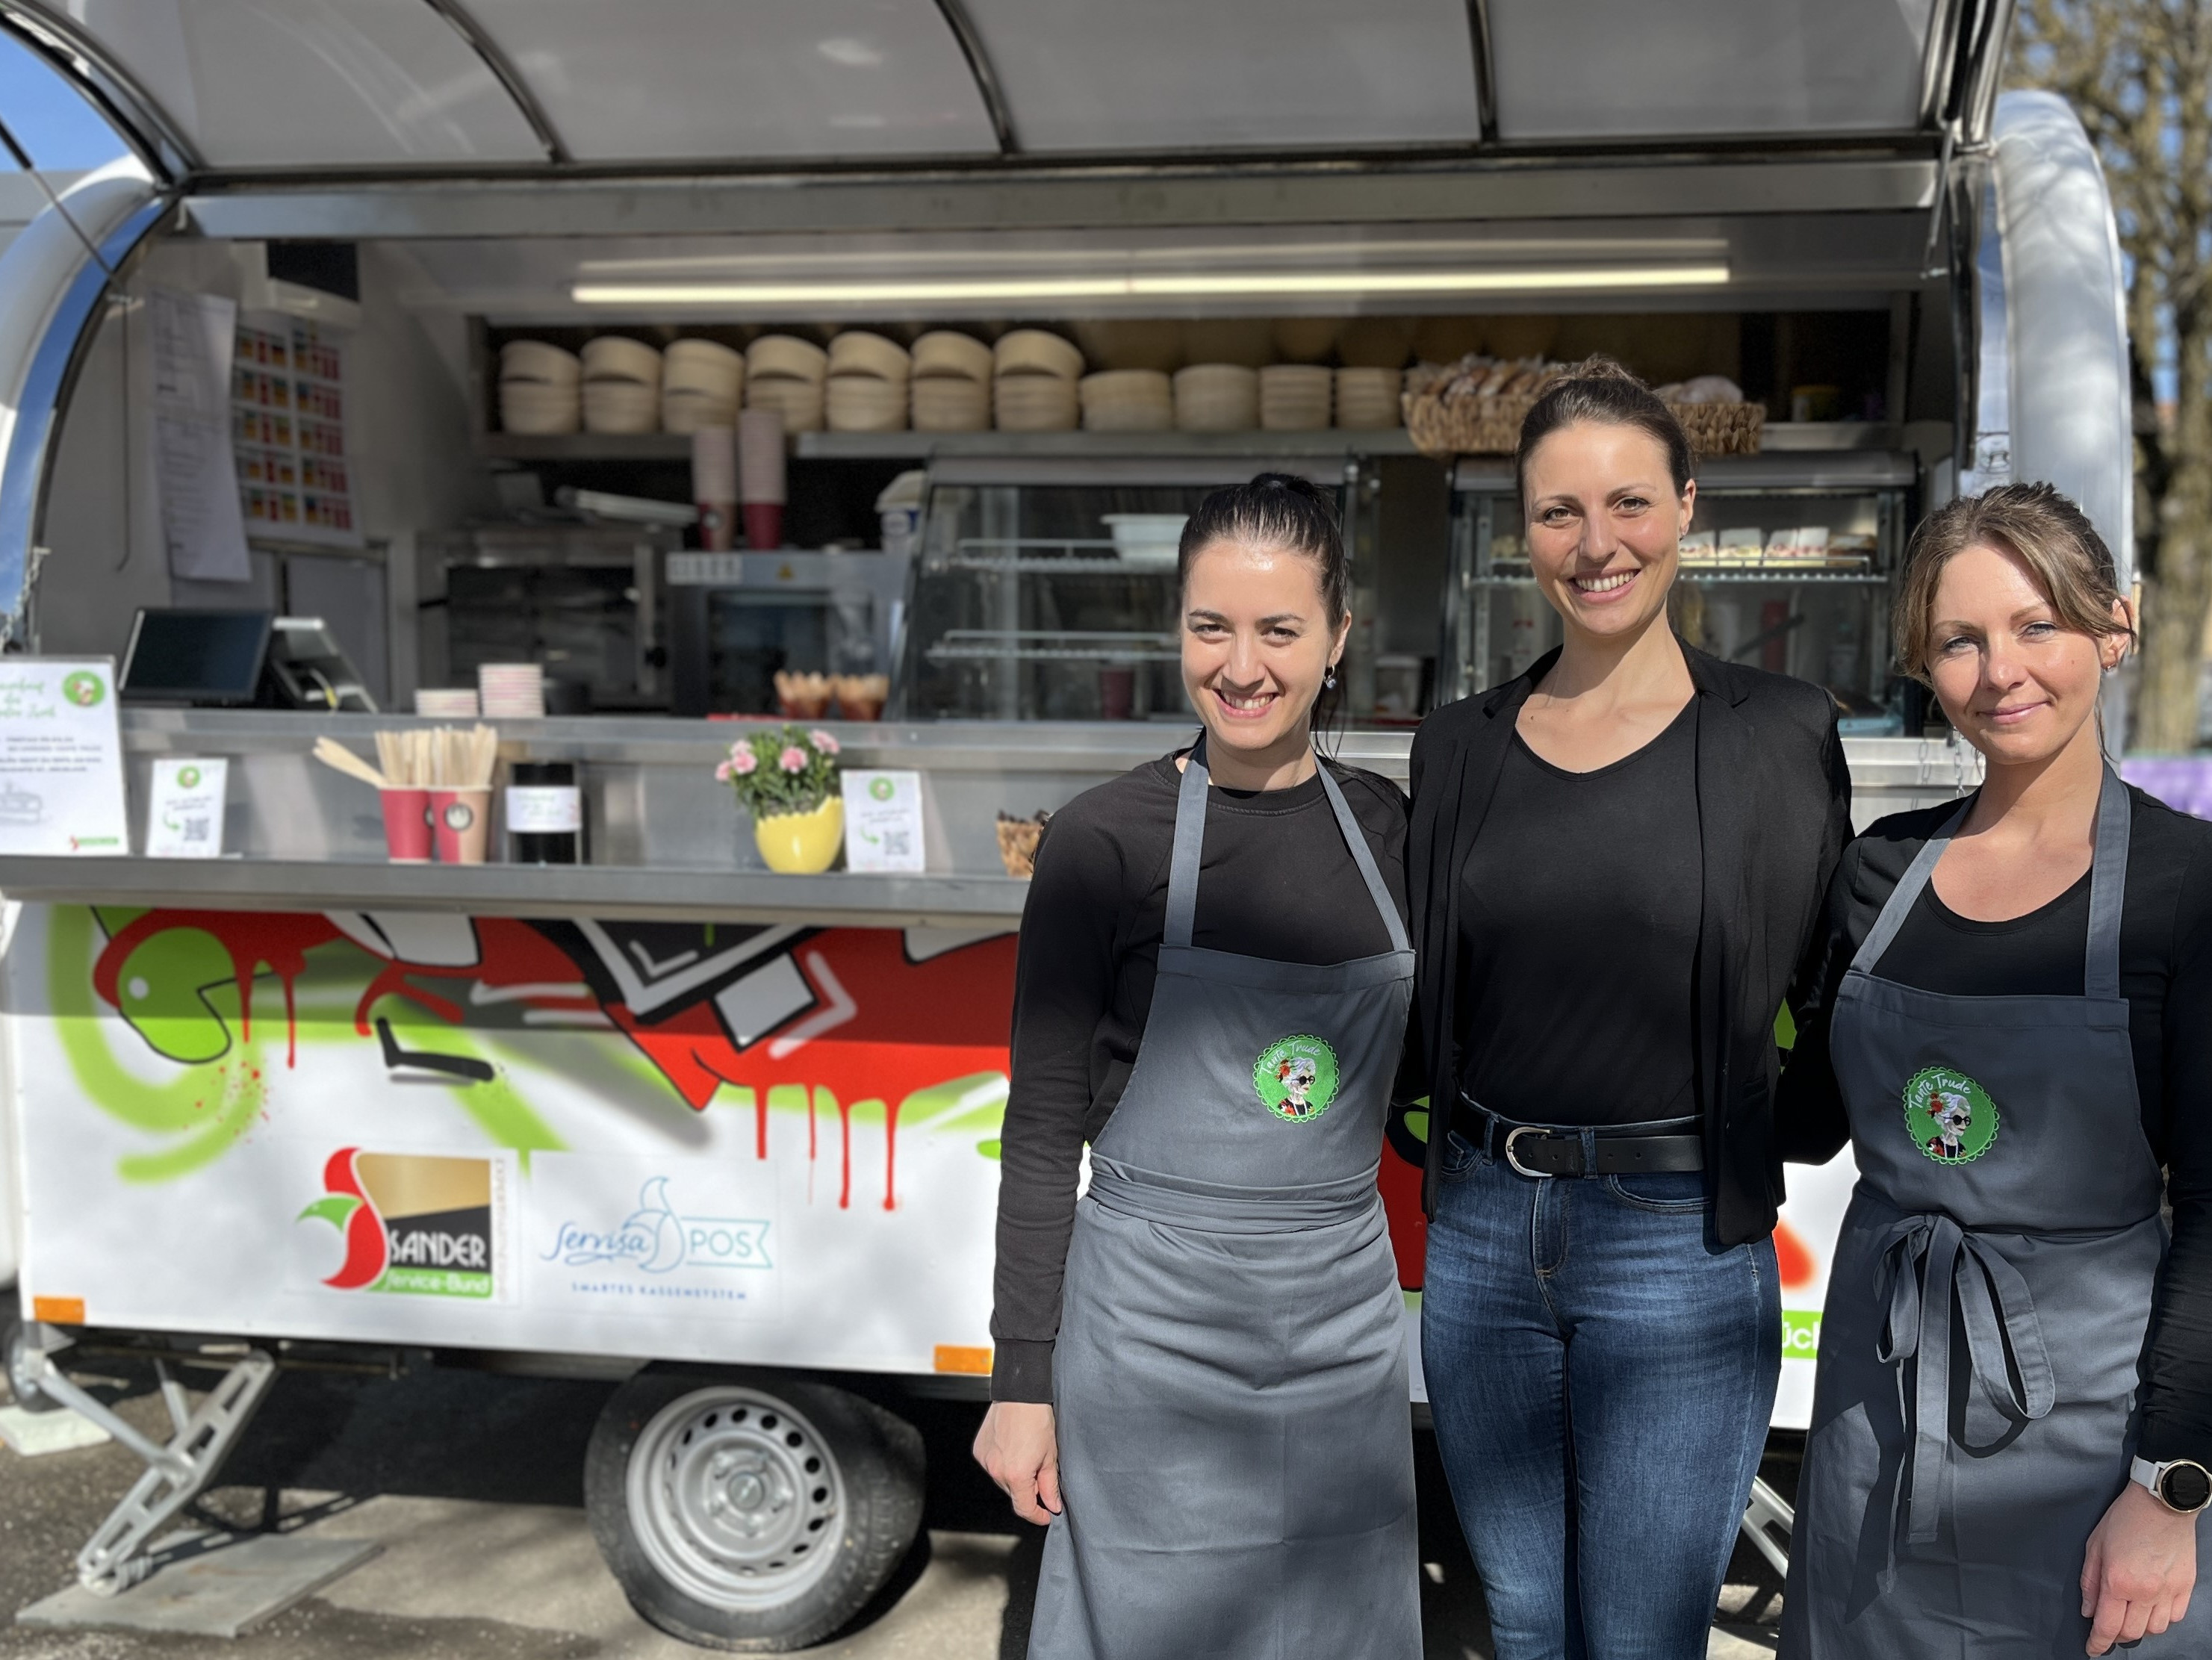 Drei Frauen stehen vor einem zum Foodtruck umfunktionierten Anhänger und lächeln.